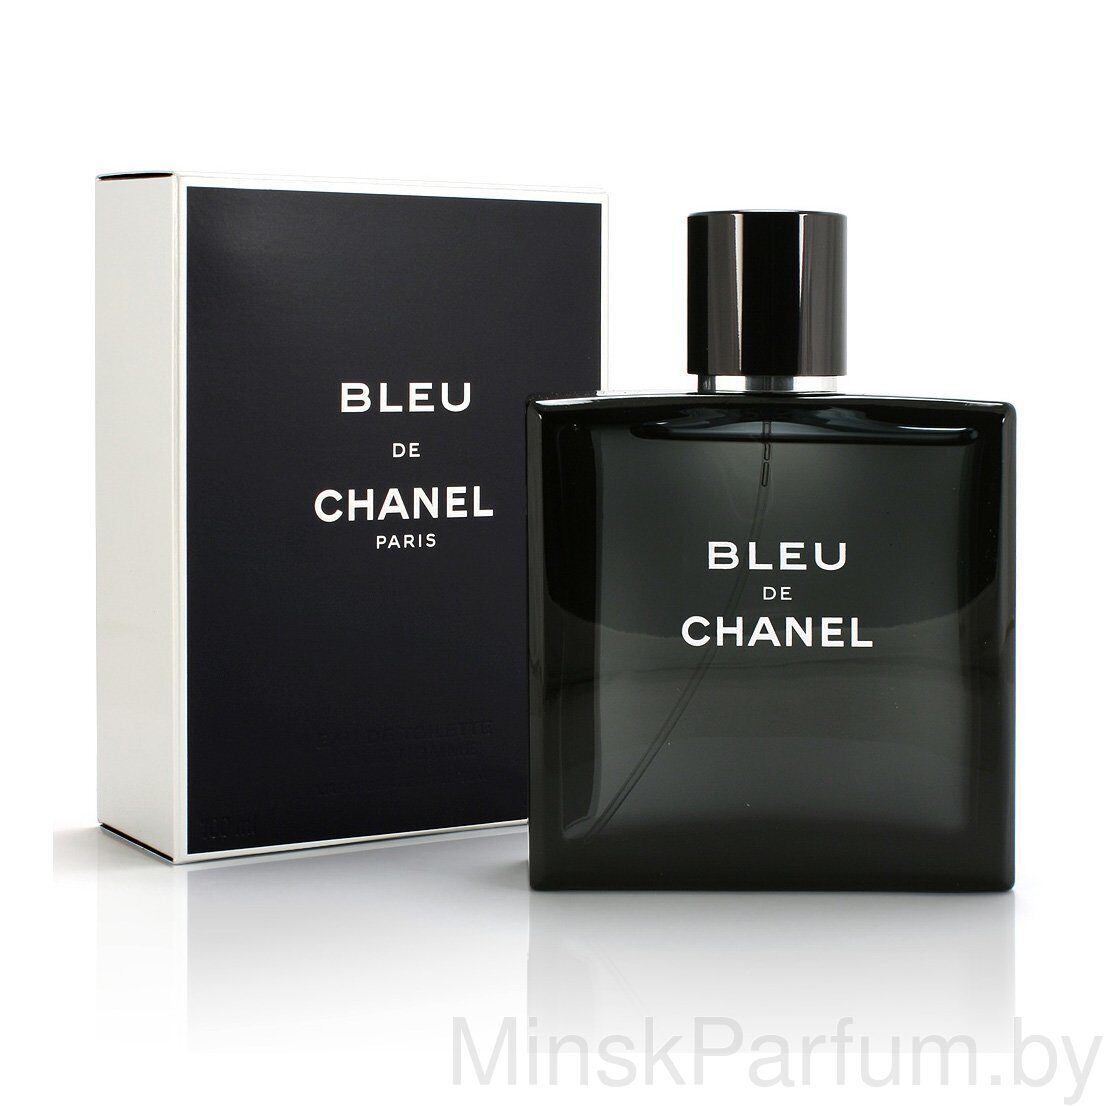 Chanel Bleu de Chane,Еdt 100ml